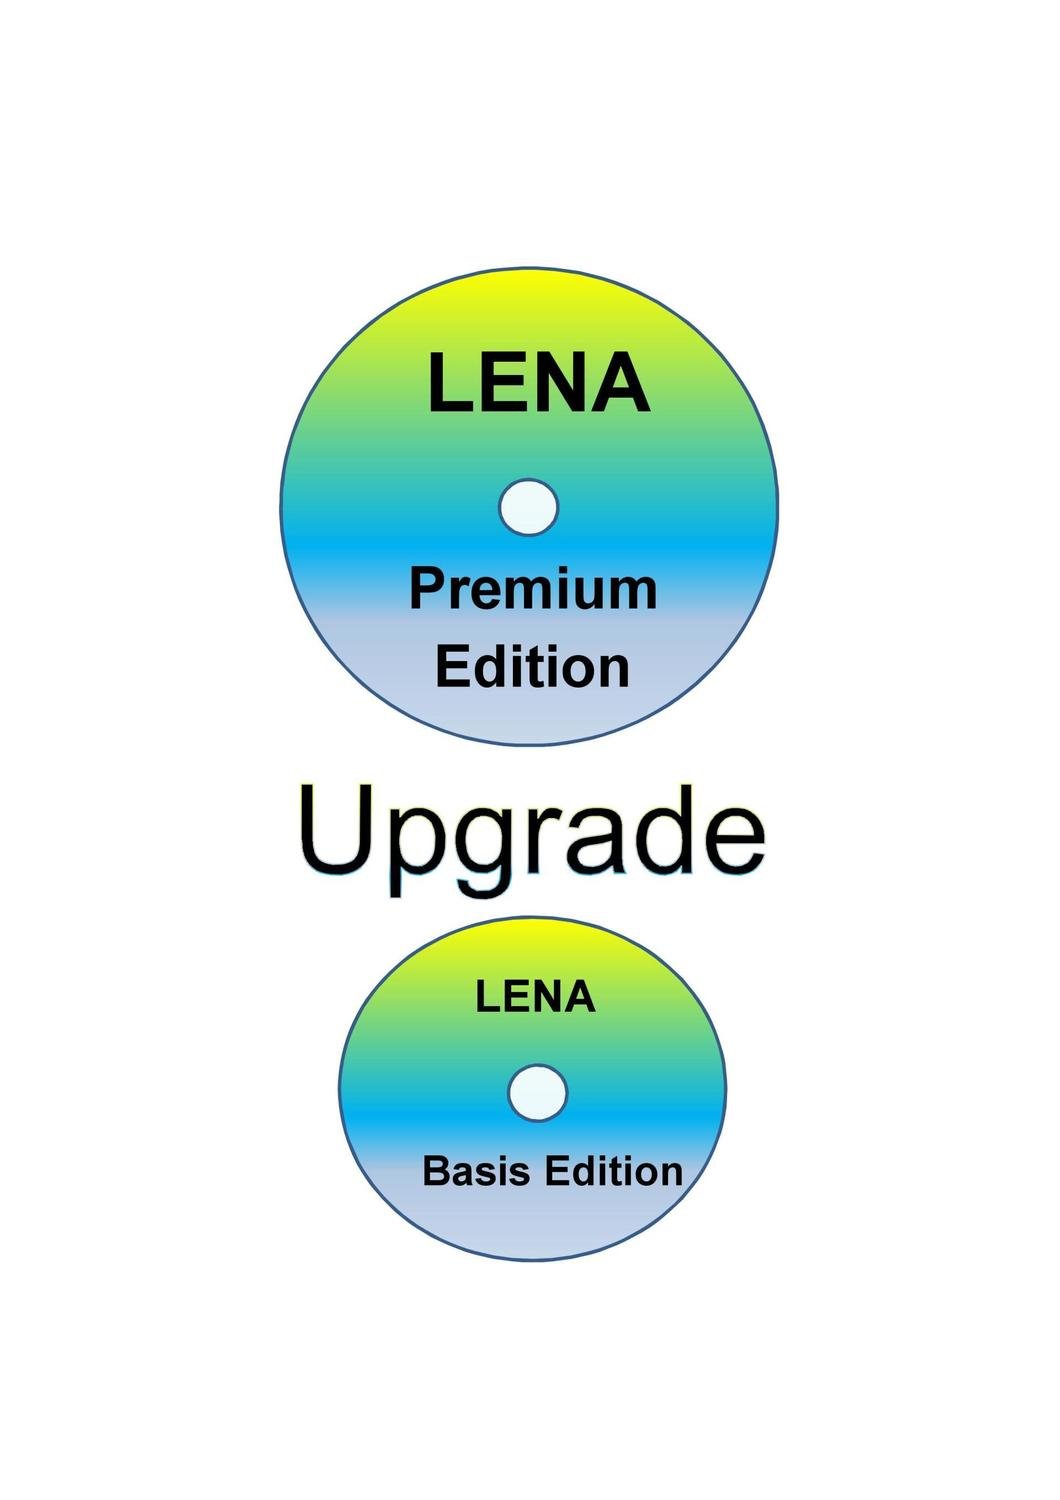 LENA Upgrade von der Basis Edition zur Premium Edition